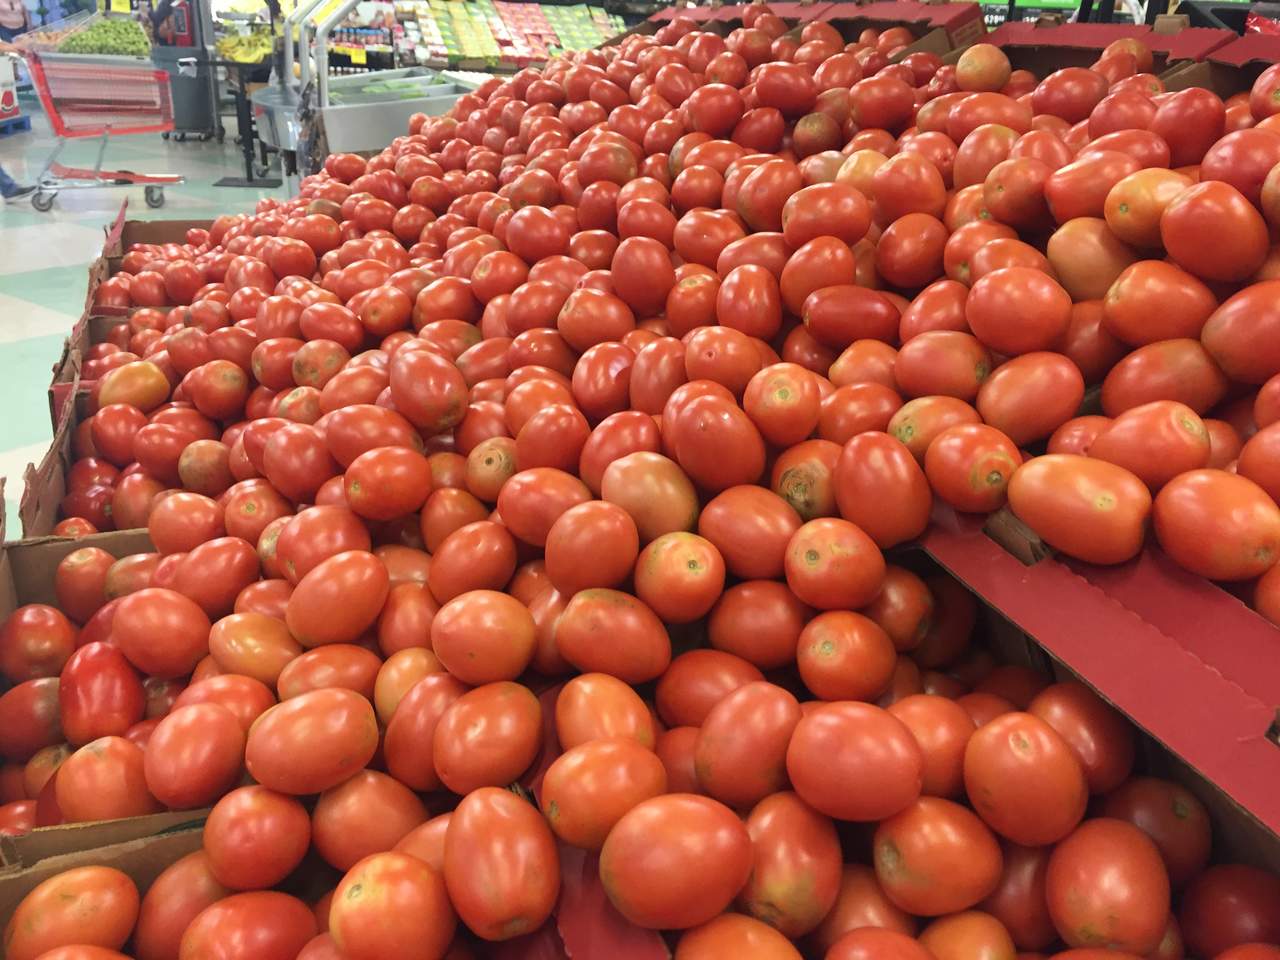 Ingenieros diseñaron un sistema que permite identificar la calidad de los tomates desde el momento en el que es colectada hasta cuando es empacada. (ARCHIVO) 